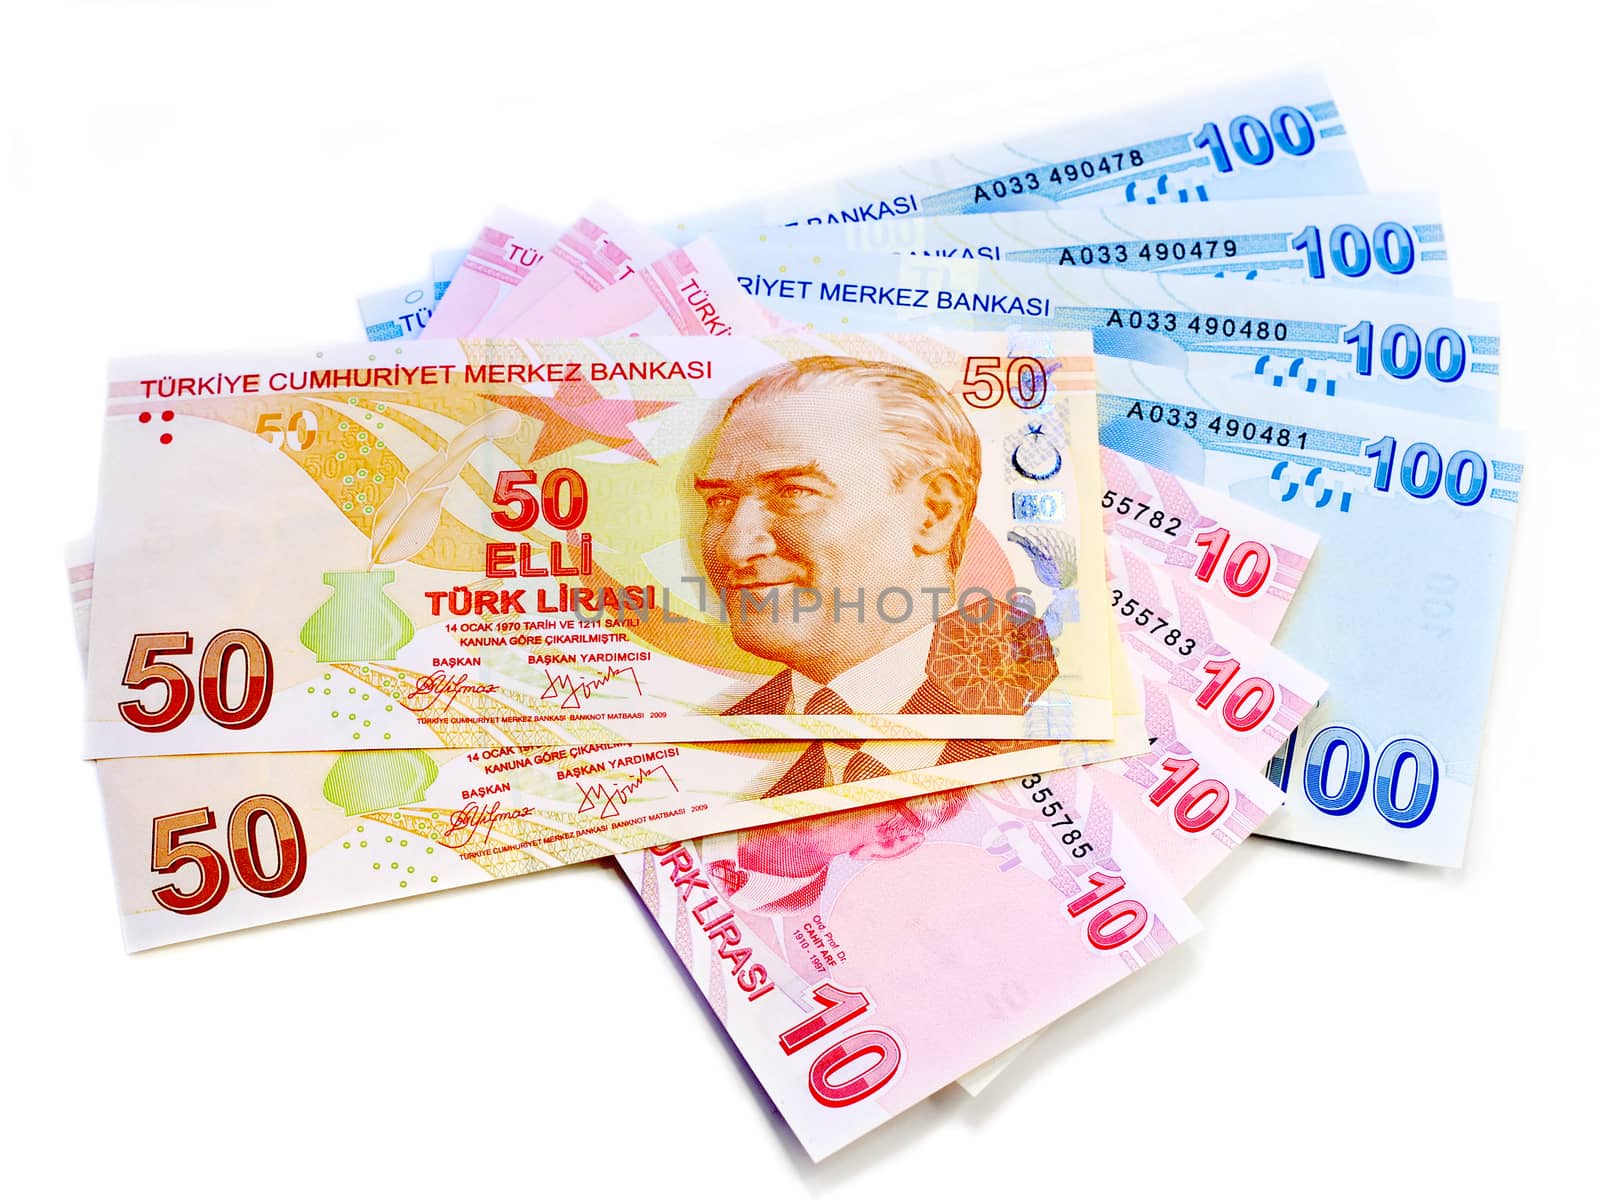 Turkish banknotes